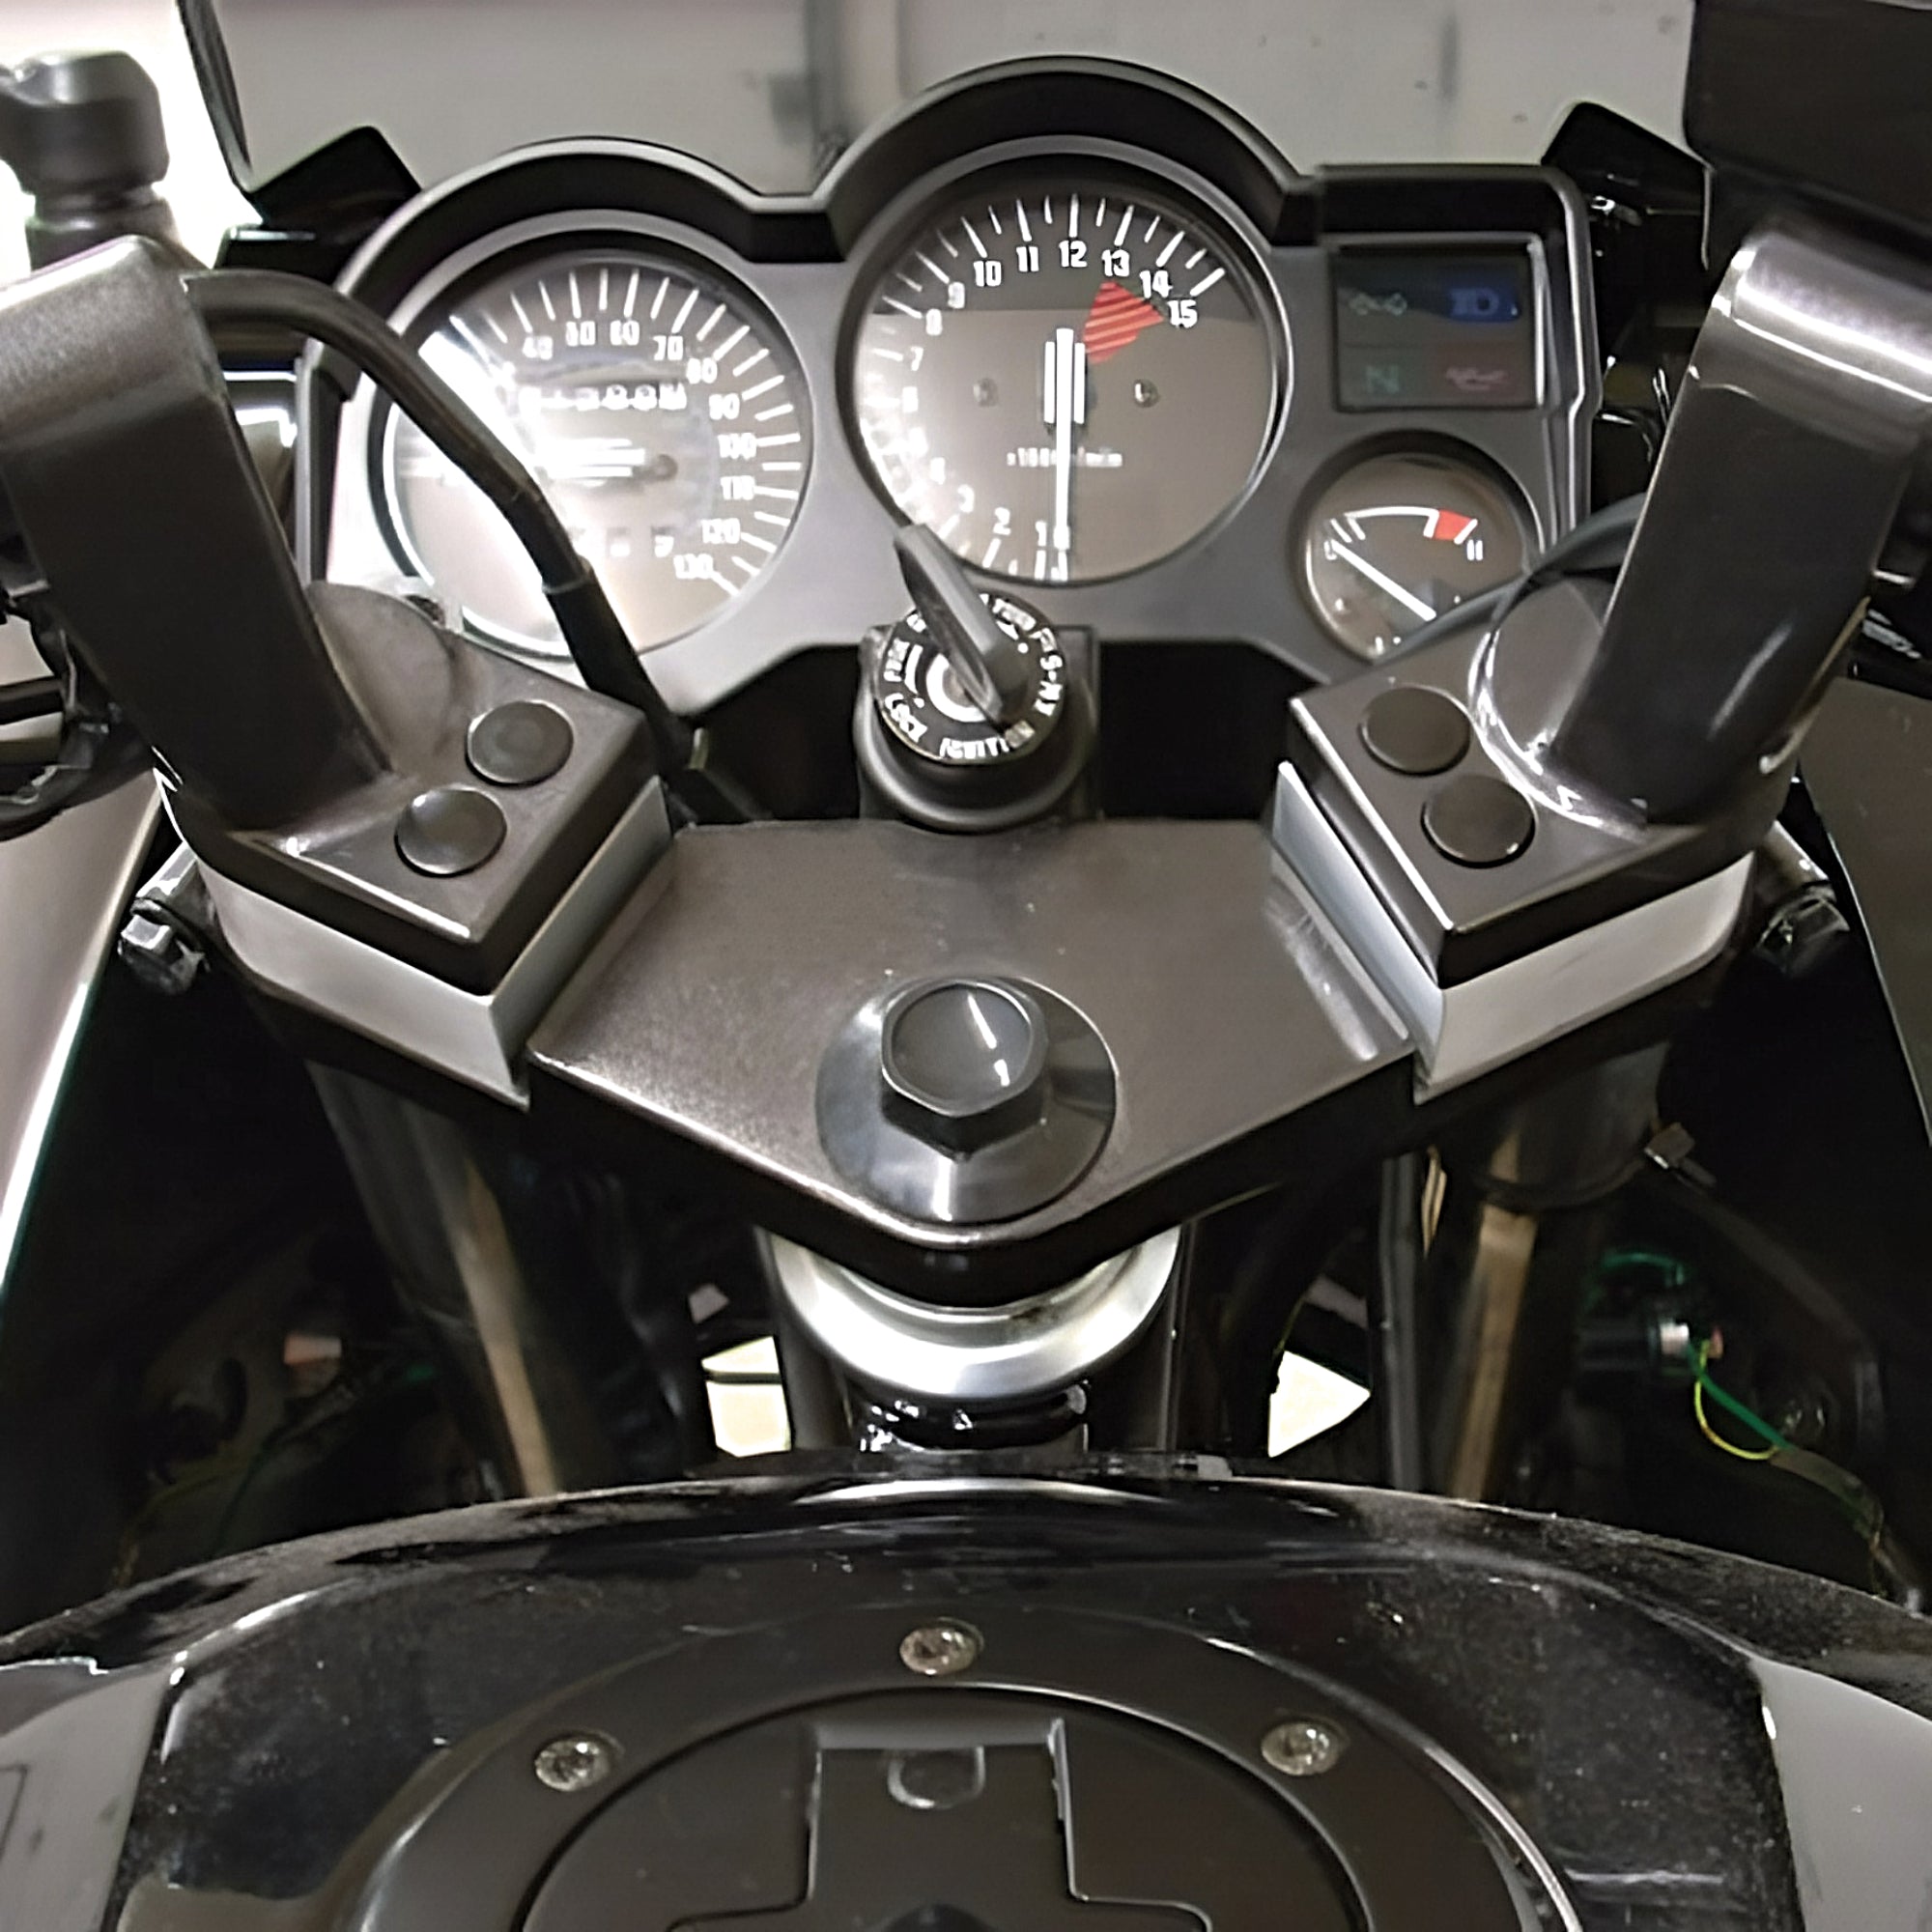 Kawasaki EX500 Ninja 500 Cyclepedia Printed Motorcycle Service Manual